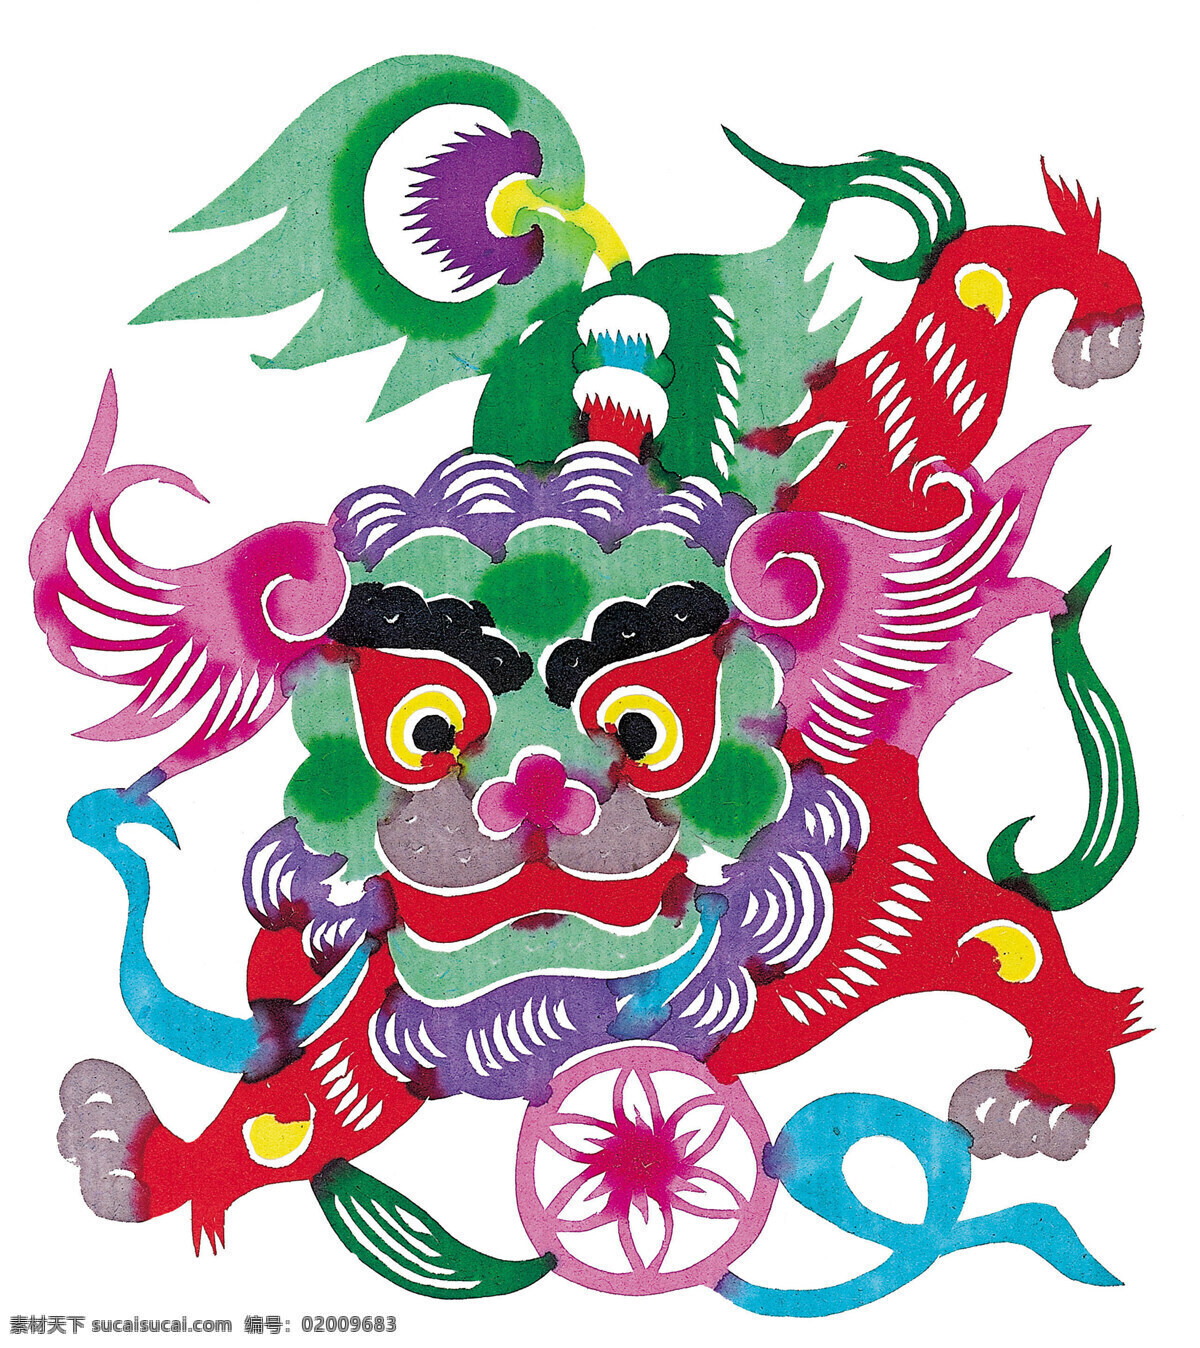 麒麟 剪纸 麒麟剪纸 中国 风 古典 花纹 传统 图案 剪纸艺术 民间剪纸艺术 民间画 文化艺术